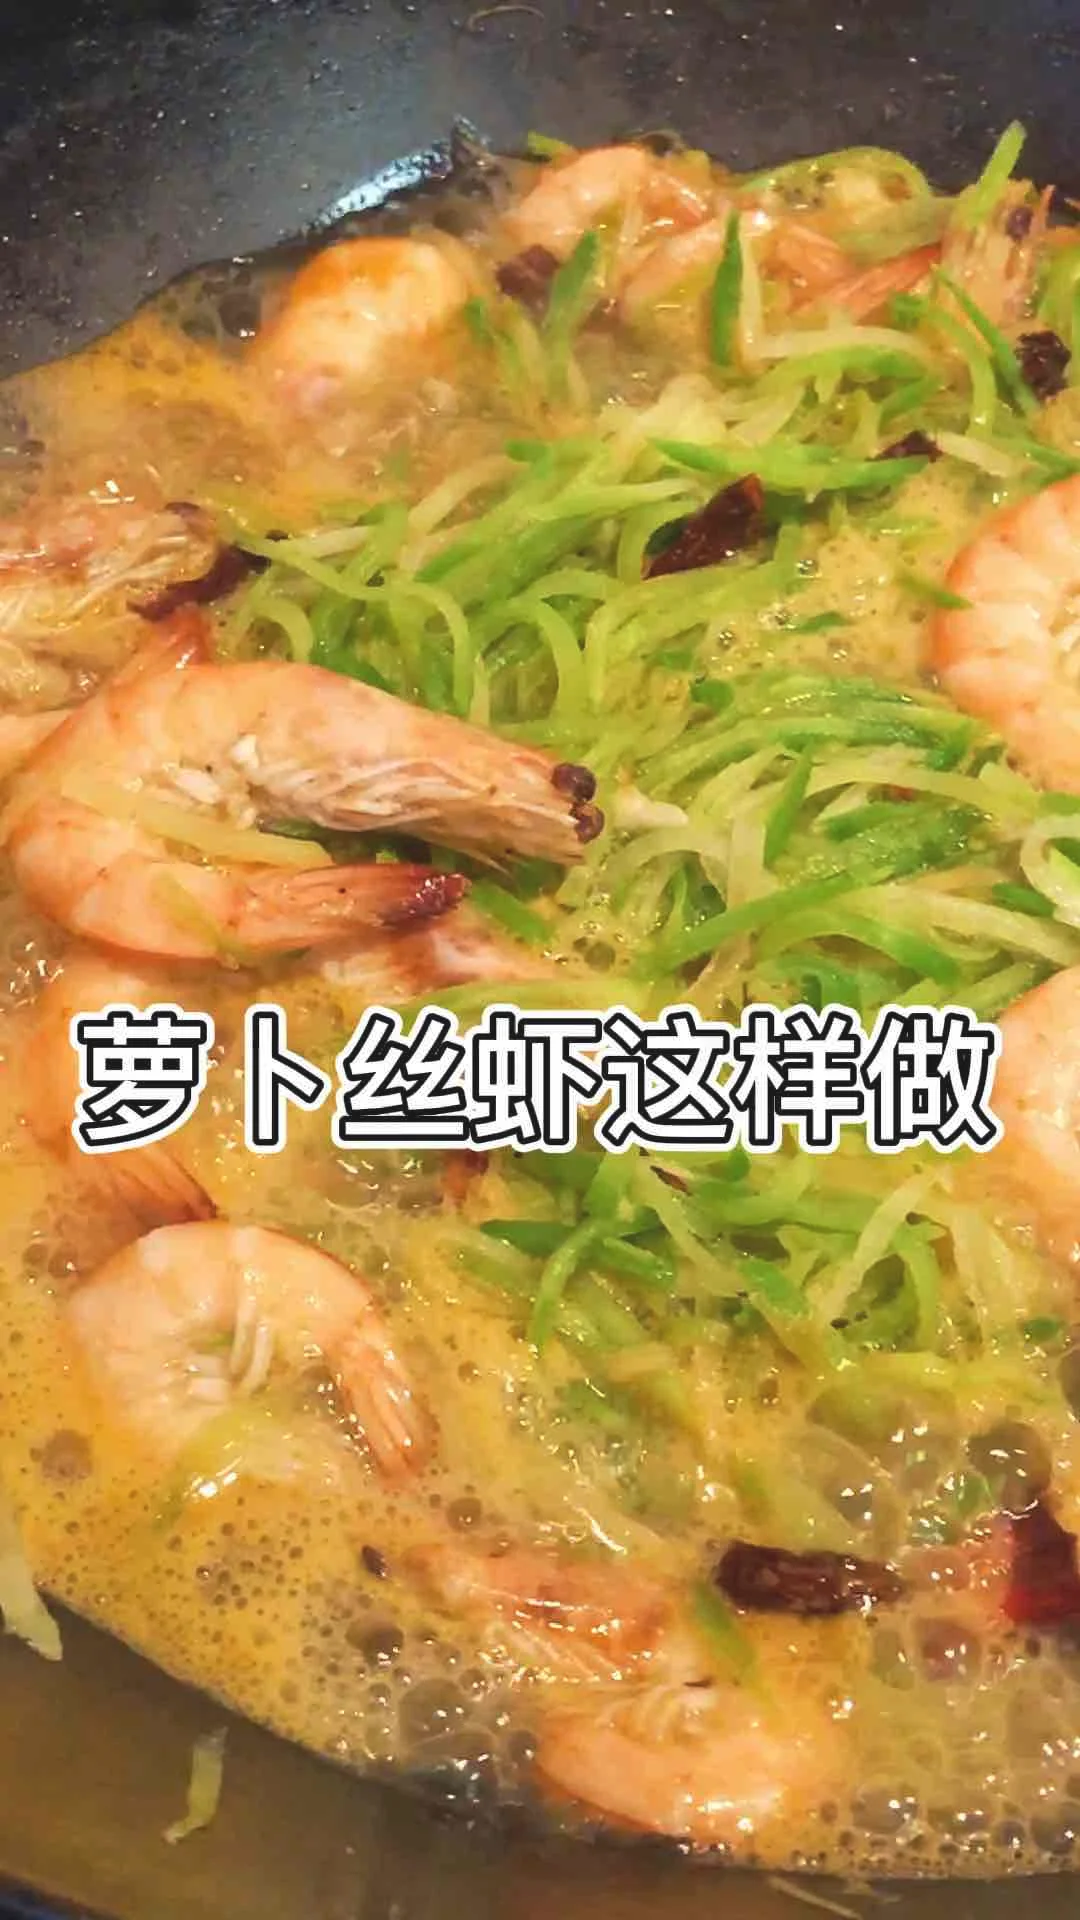 萝卜丝虾的做法-咸鲜味炒菜谱